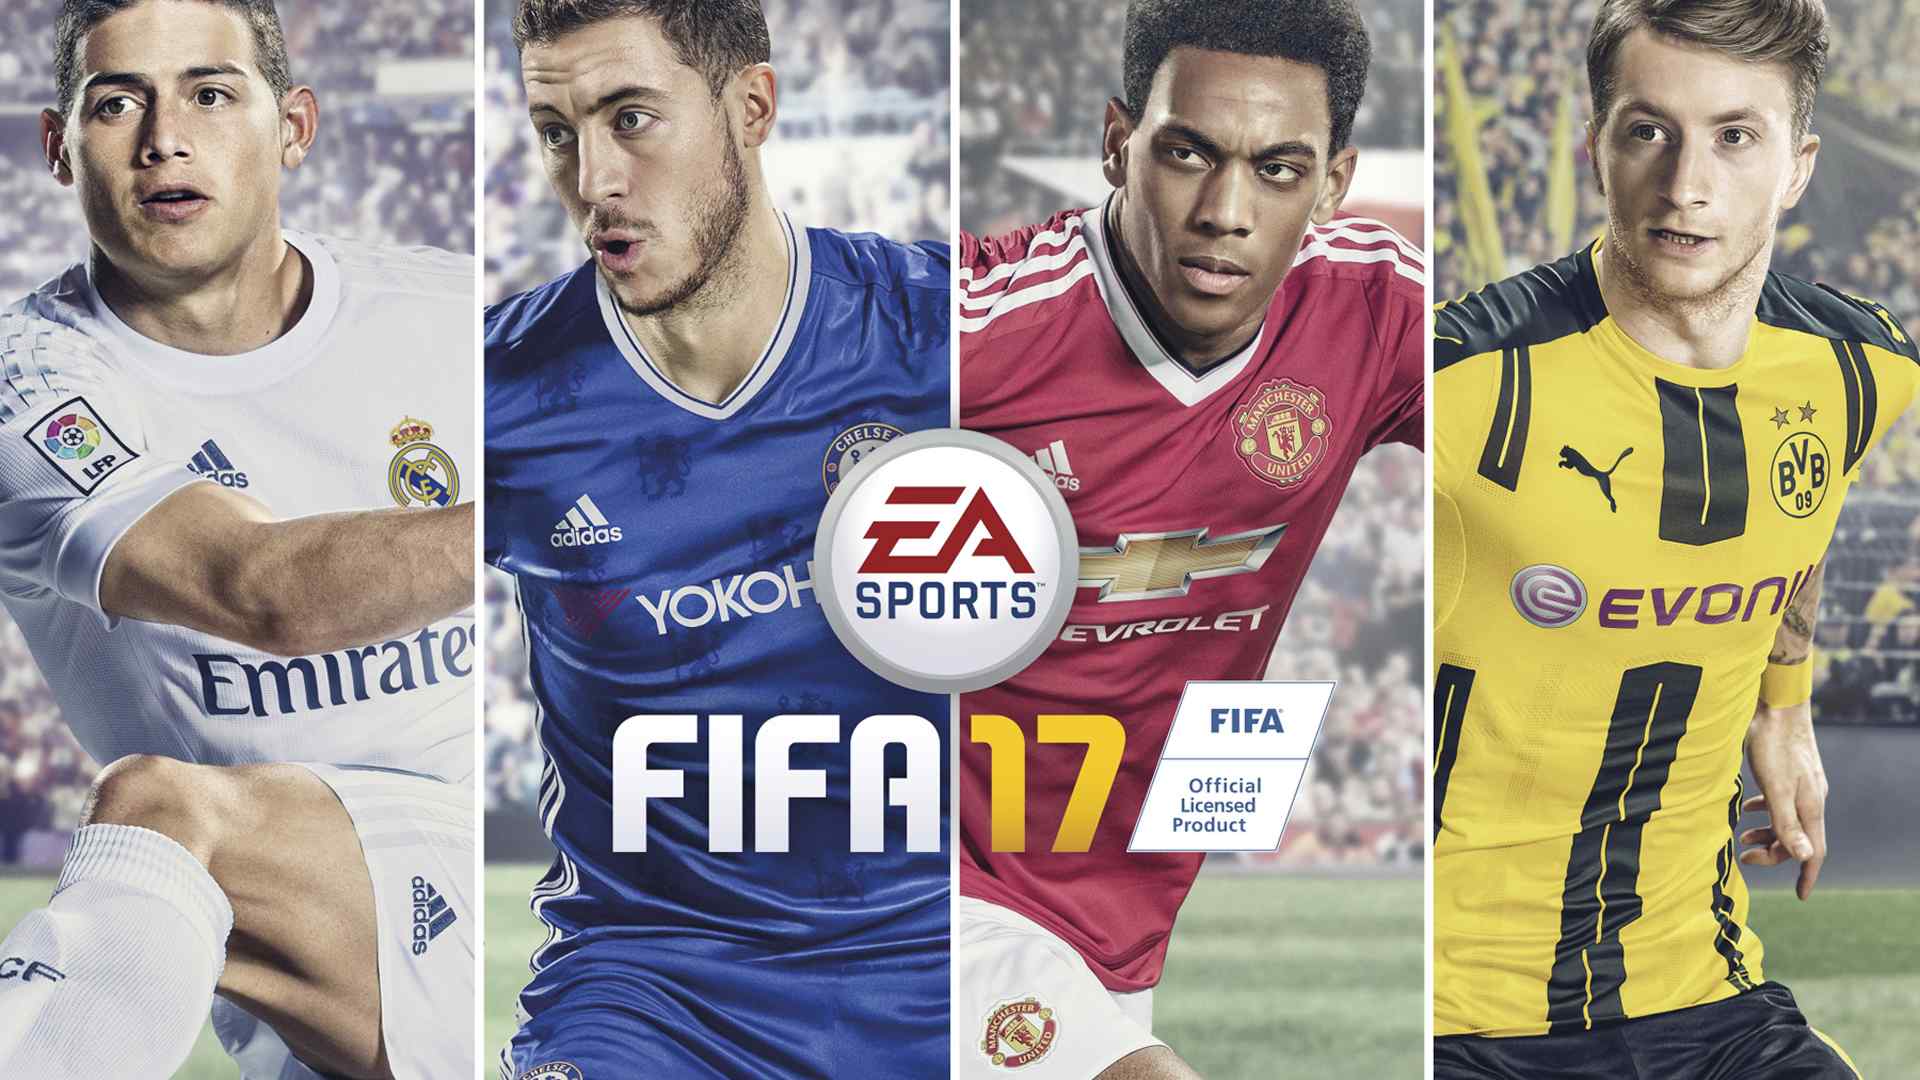 足球游戏FIFA17海报图片桌面壁纸